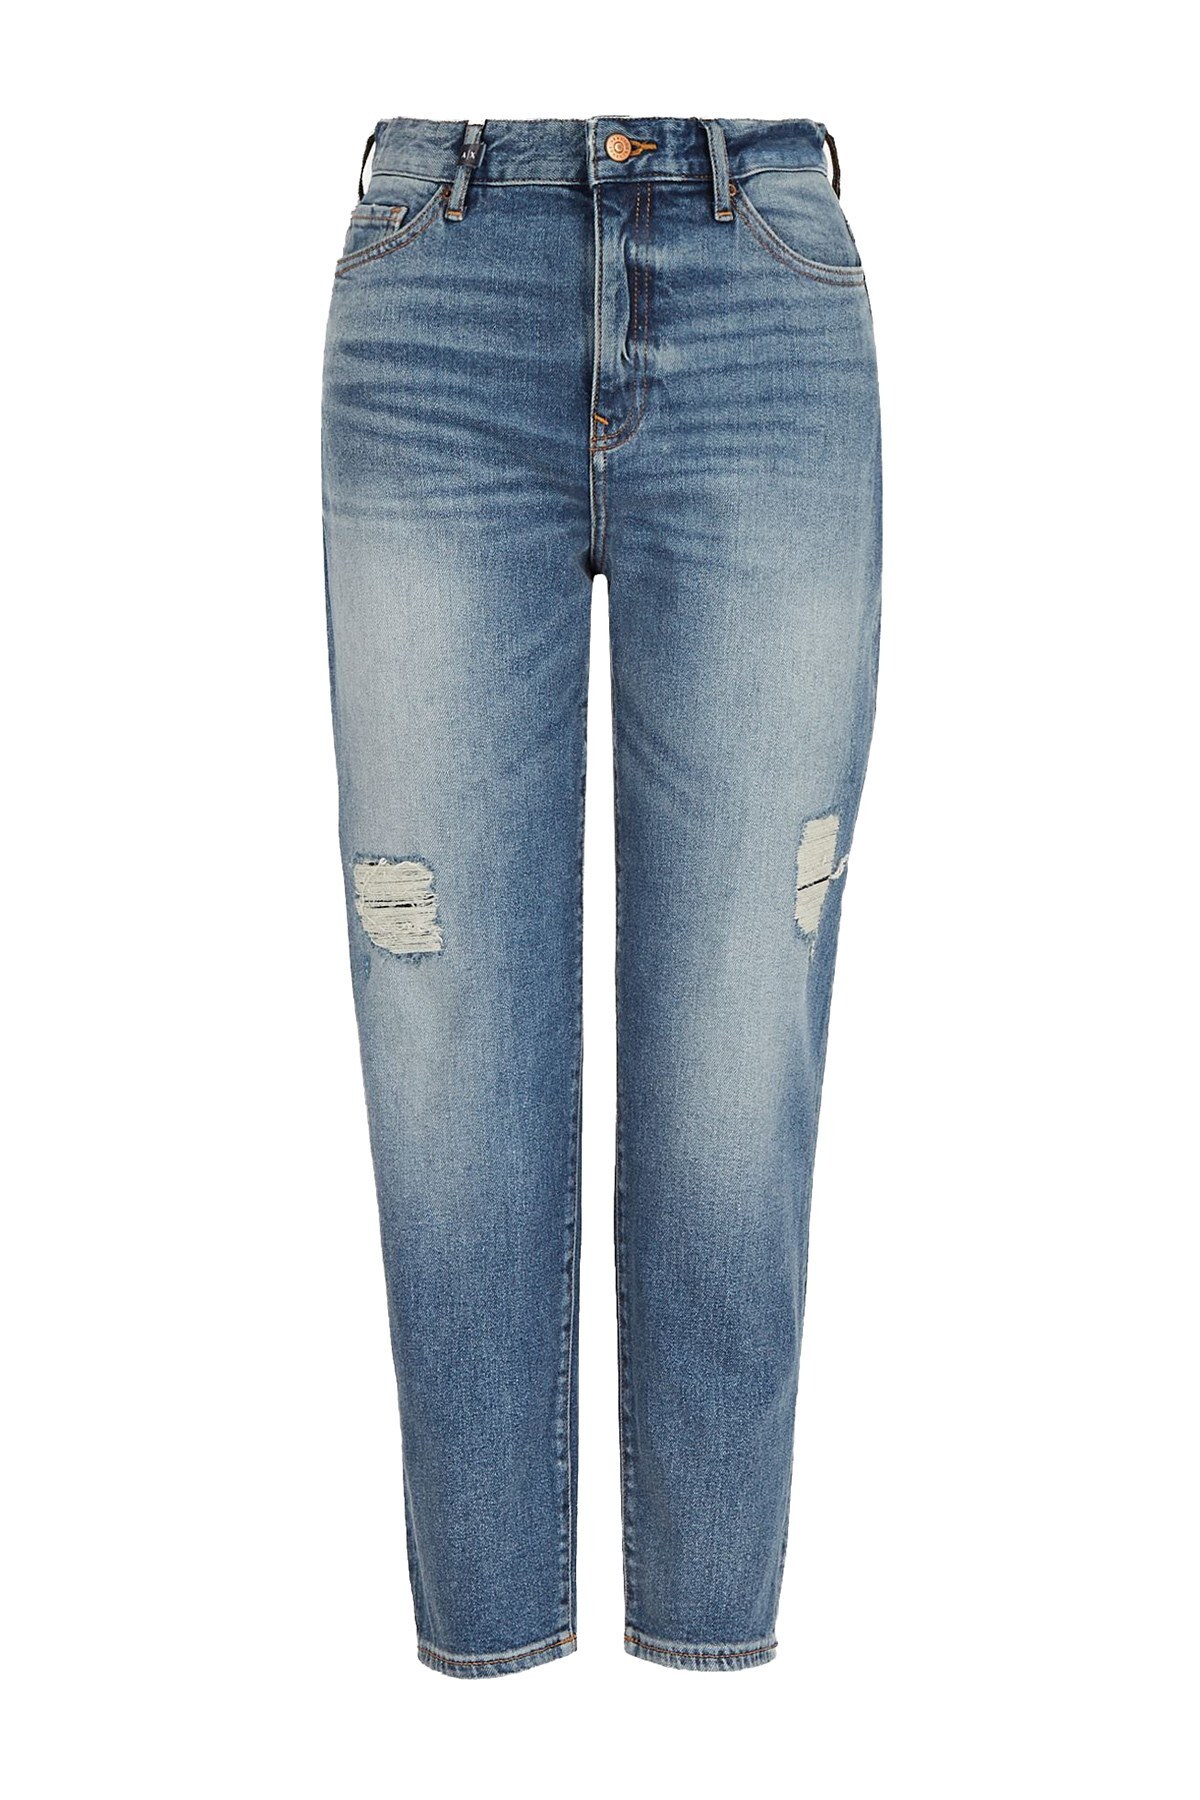 Armani Exchange J16 Jeans Bayan Kot Pantolon 3KYJ16 Y1FEZ 1500 MAVİ